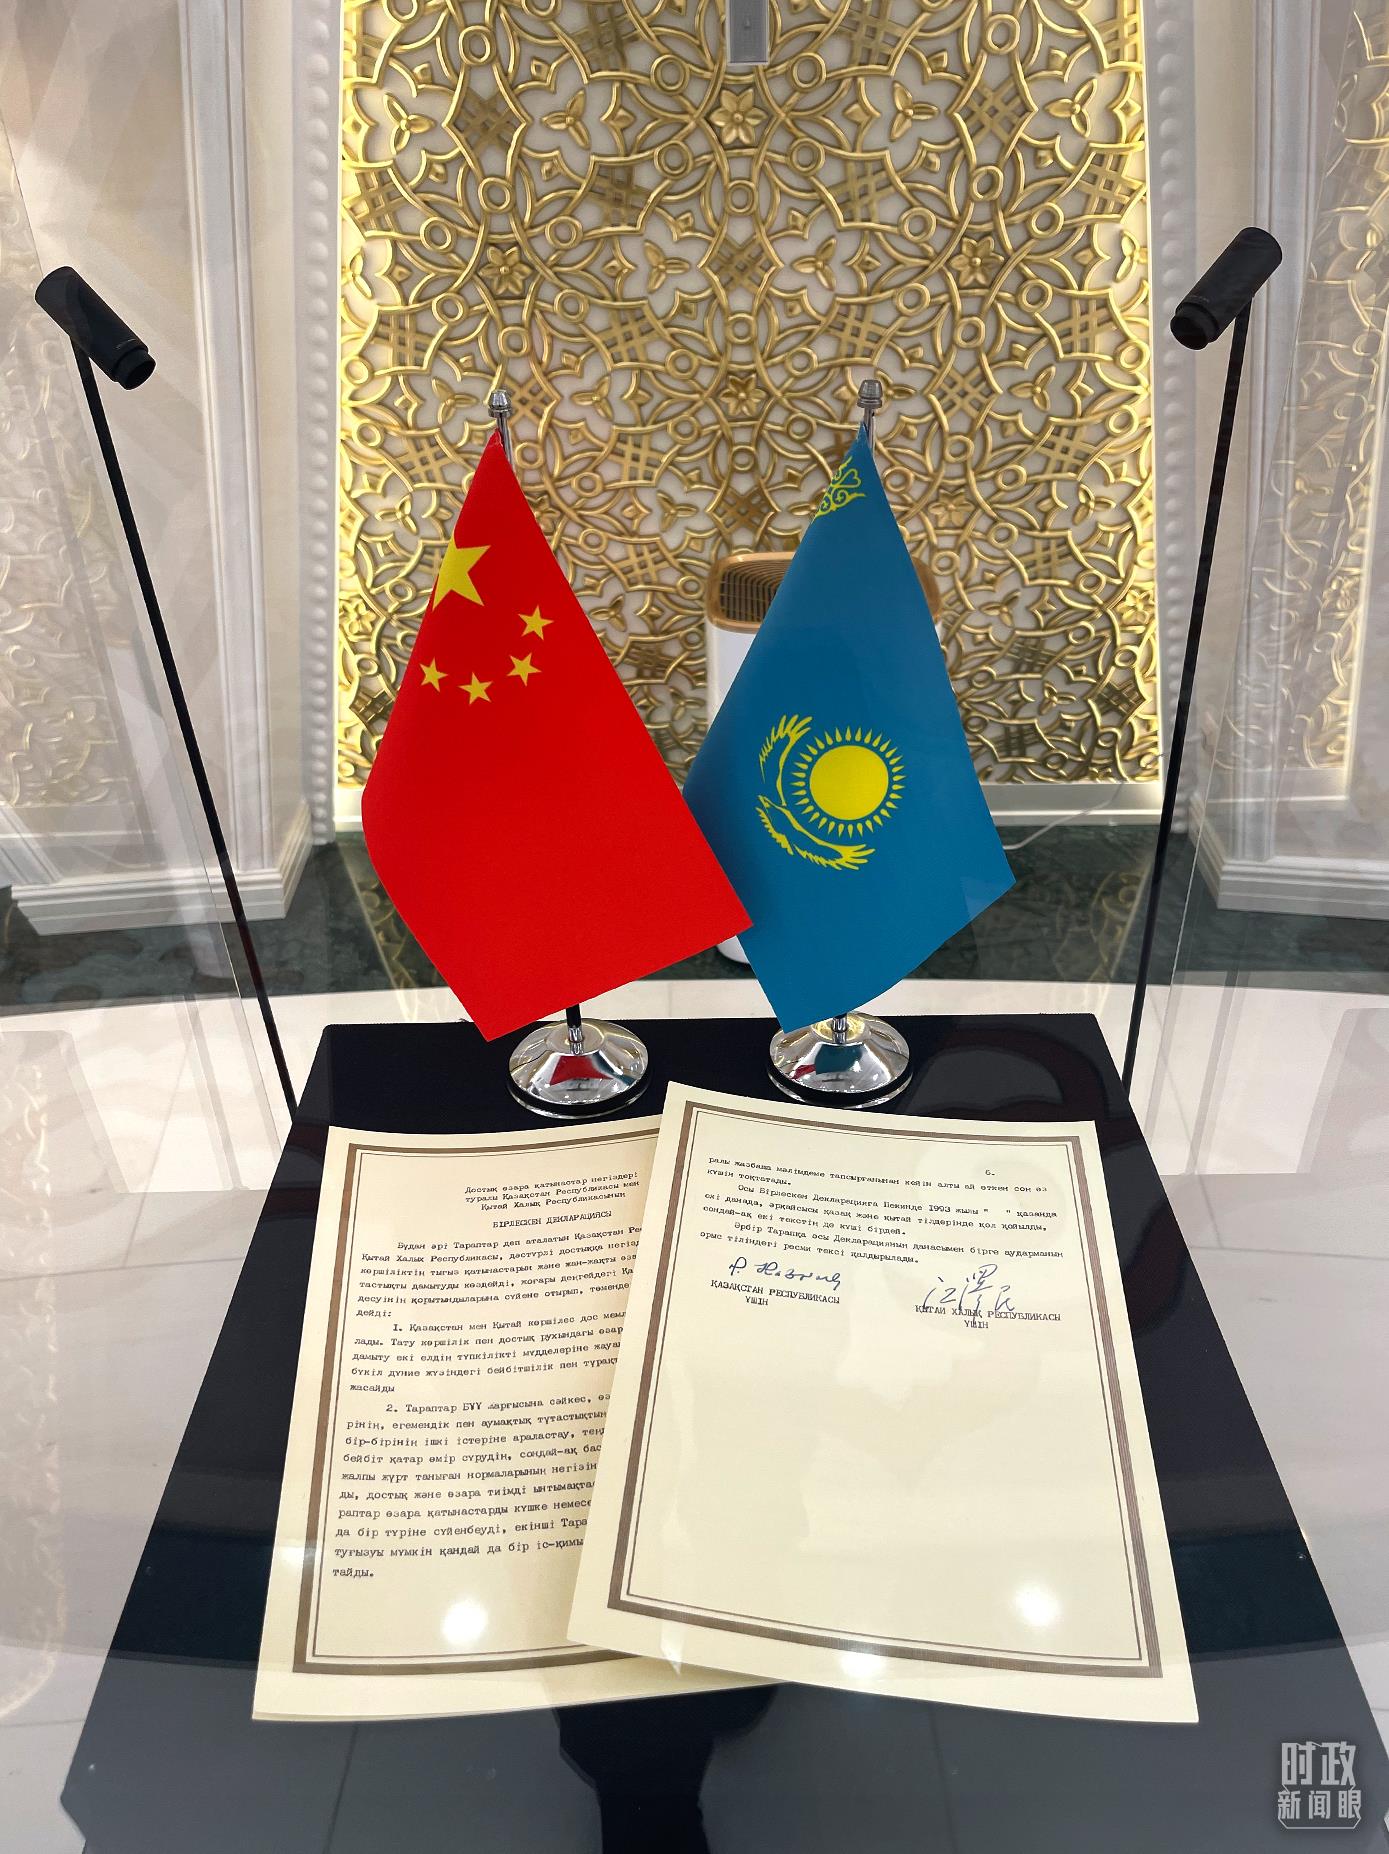 △1993年签署的《关于中华人民共和国和哈萨克斯坦共和国友好关系基础的联合声明》。（总台央视记者鄂介甫拍摄）